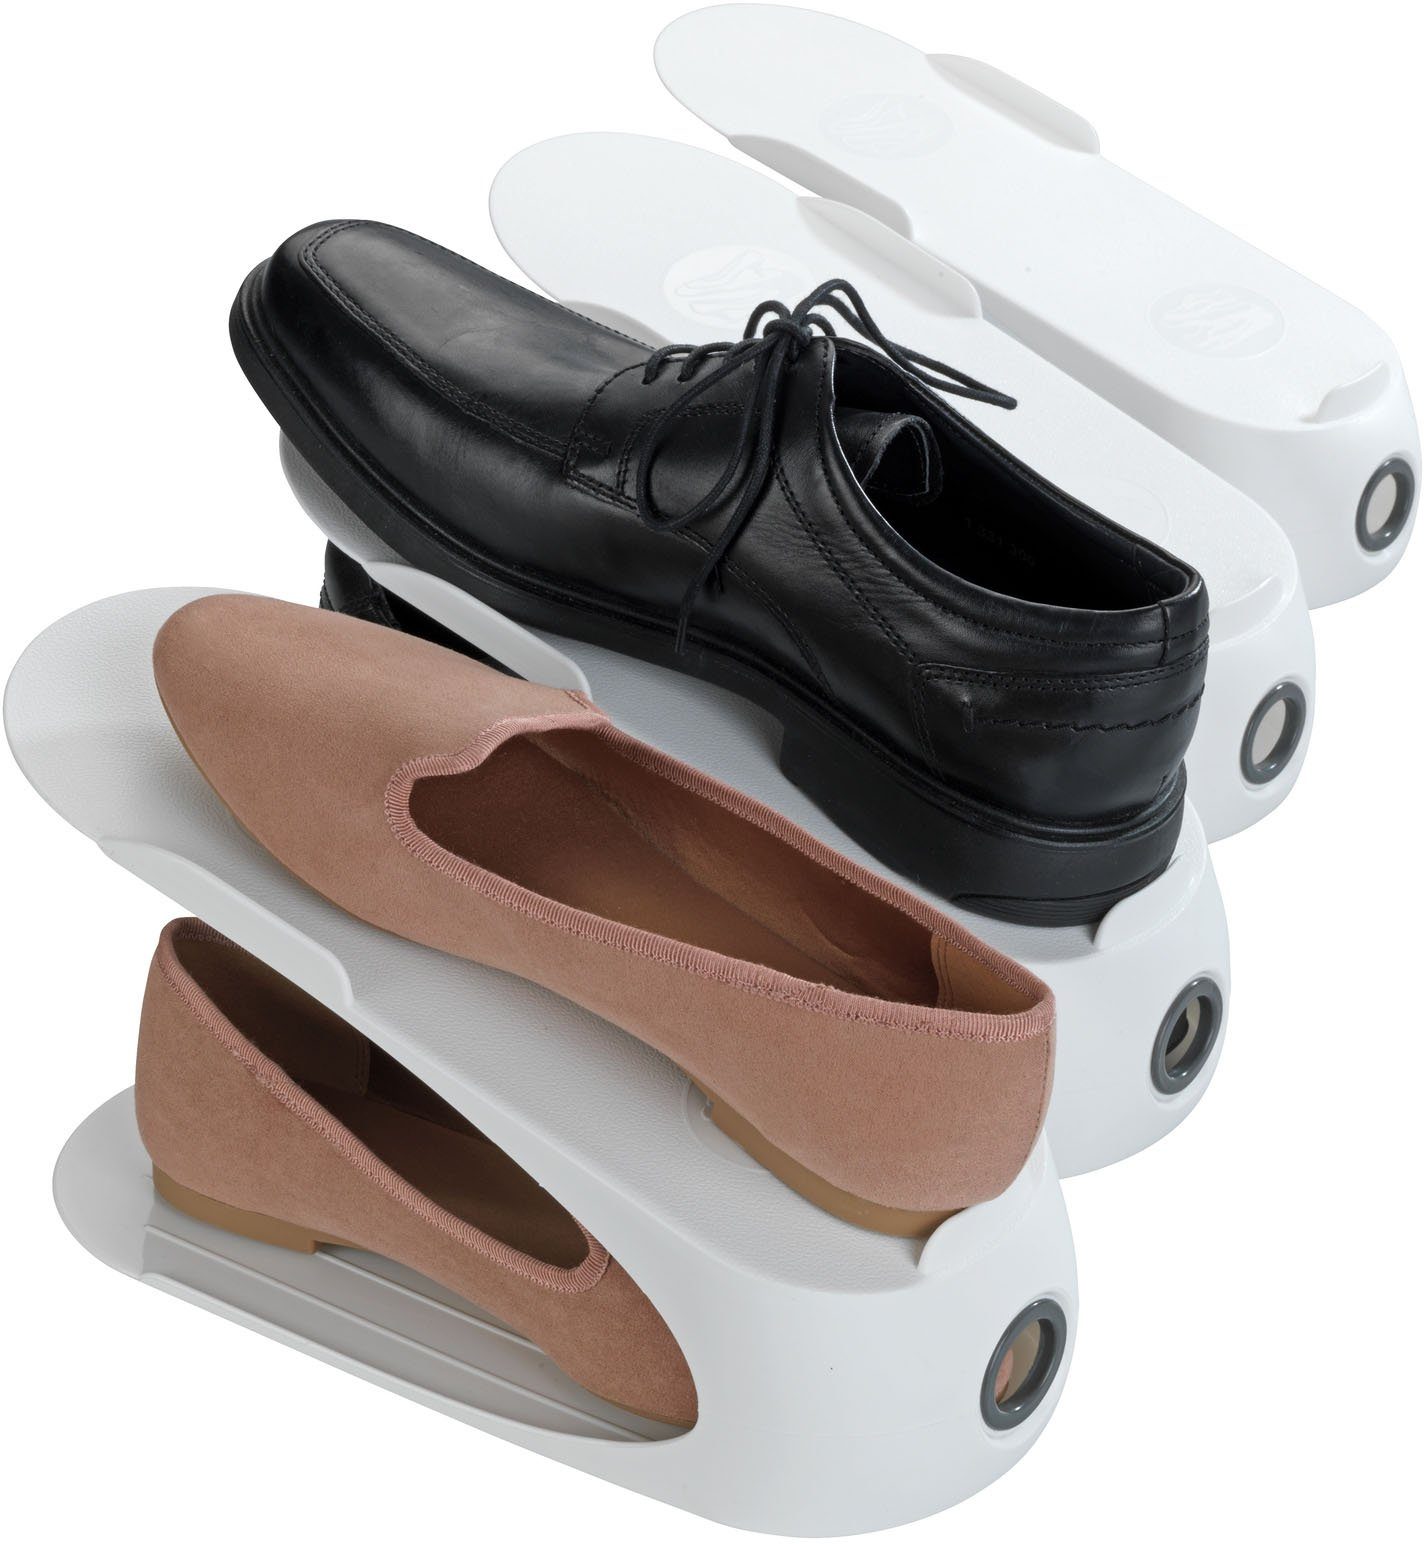 WENKO Schuhstapler, 50 % mehr Platz im Schuhschrank, Kunststoff, 4-teilig weiß